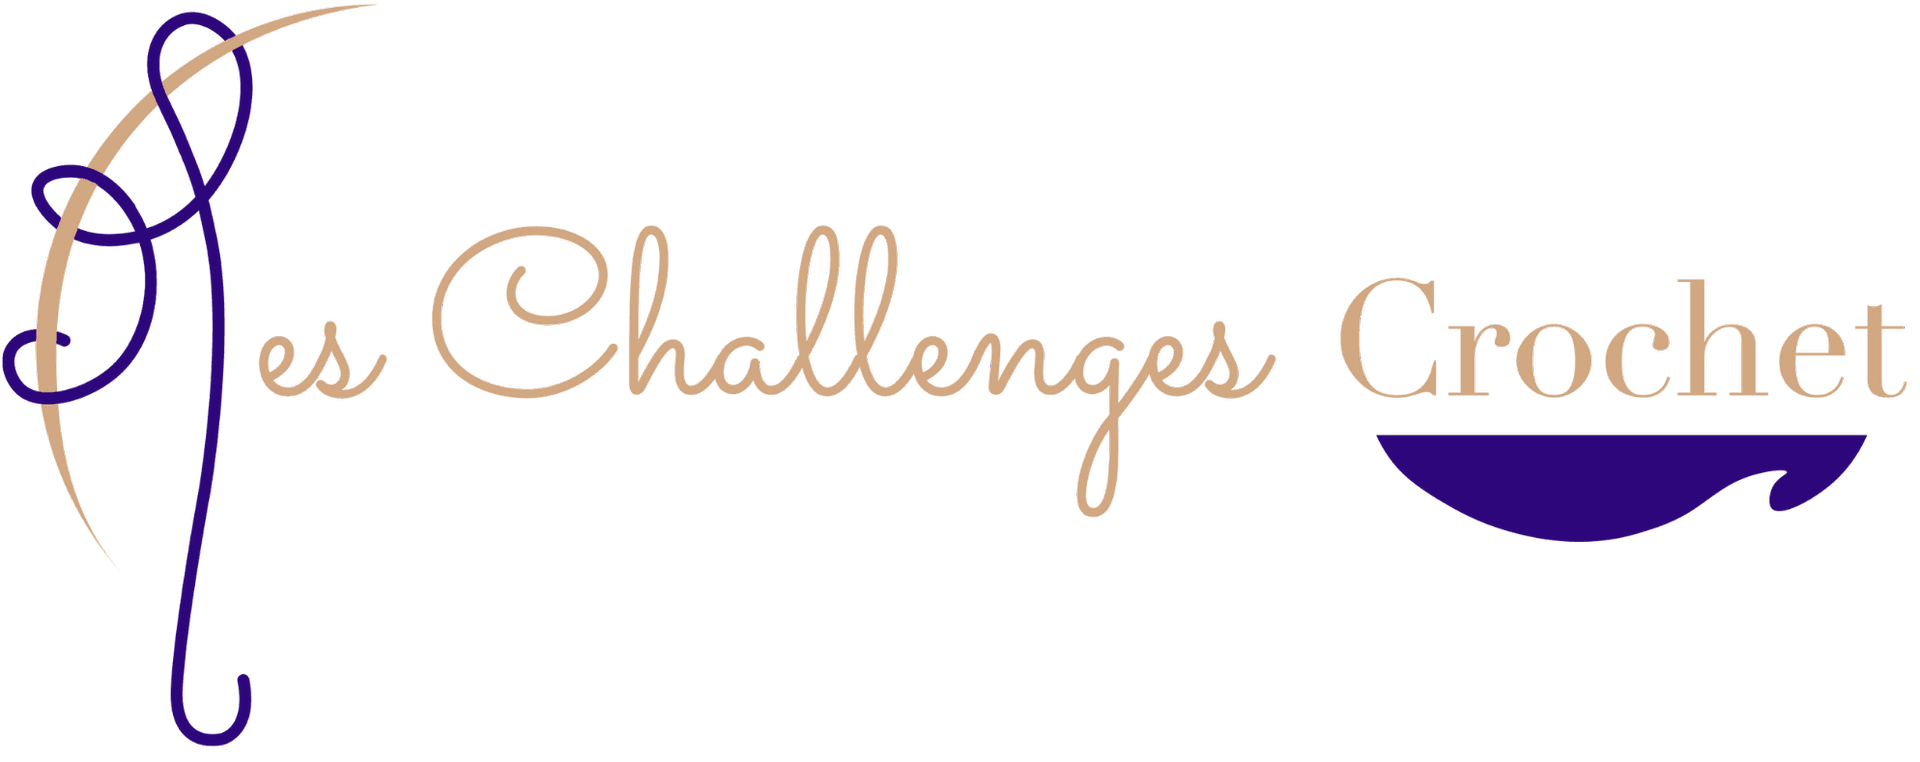 Mes Challenges Crochet propose des patrons de crochet variés, présentés comme des défis facilités.  Vendus en téléchargement direct, ils permettent de s'épanouir grâce à des projets ambitieux mais simplifiés et adaptés à chacun.